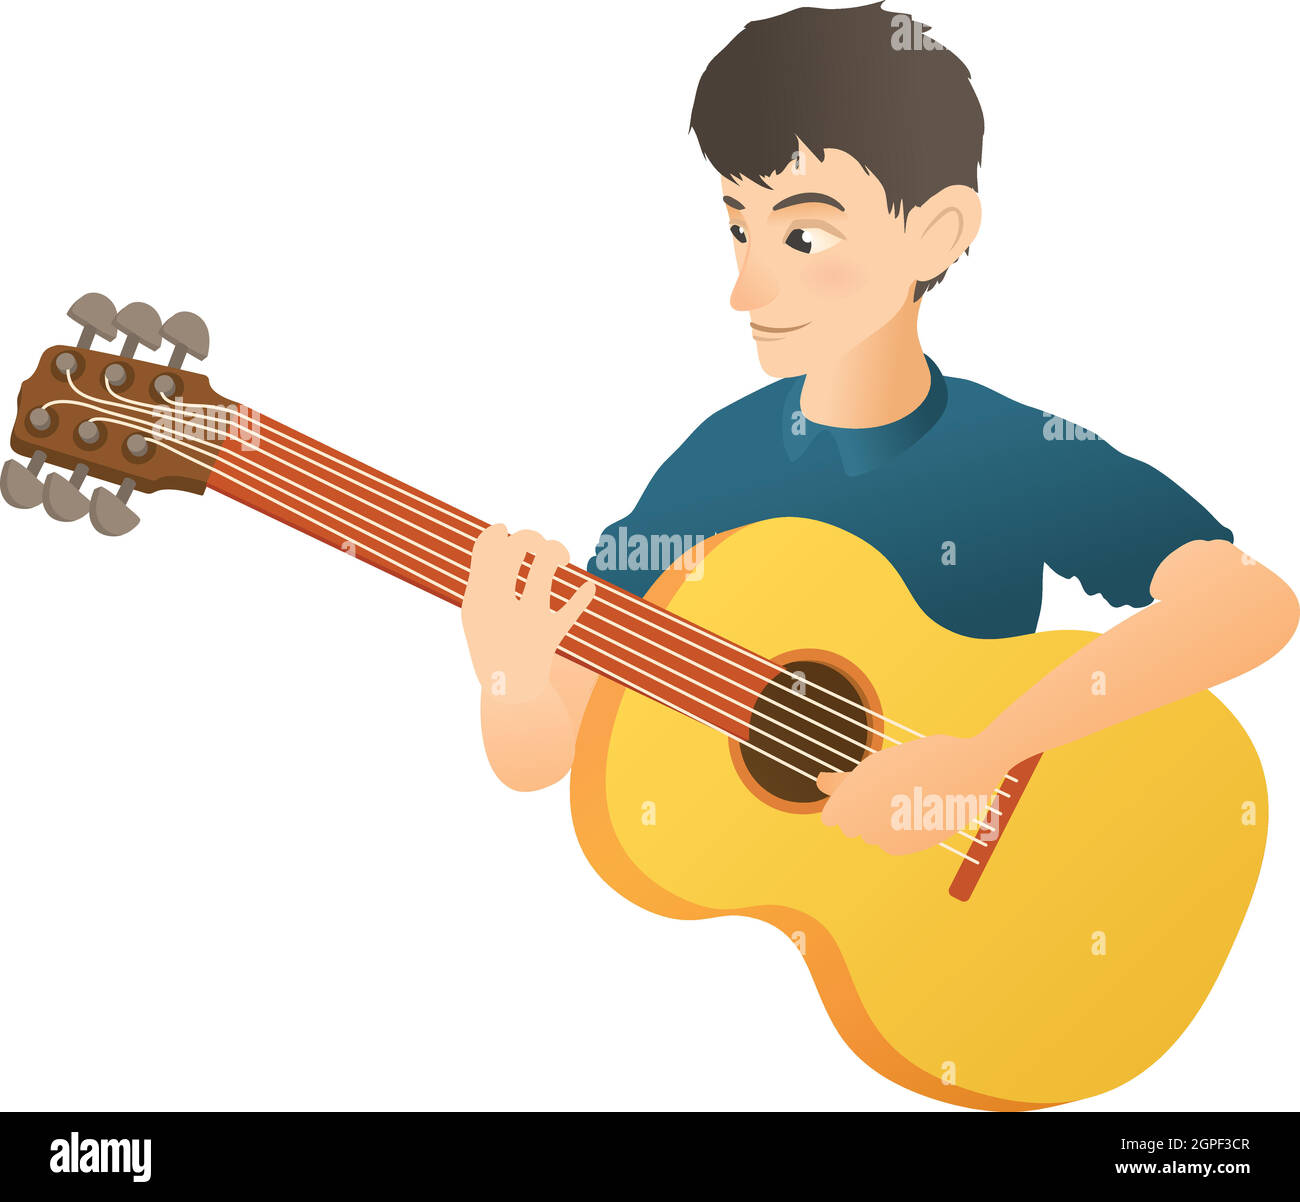 Bass guitar icon image vector Banque d'images détourées - Alamy